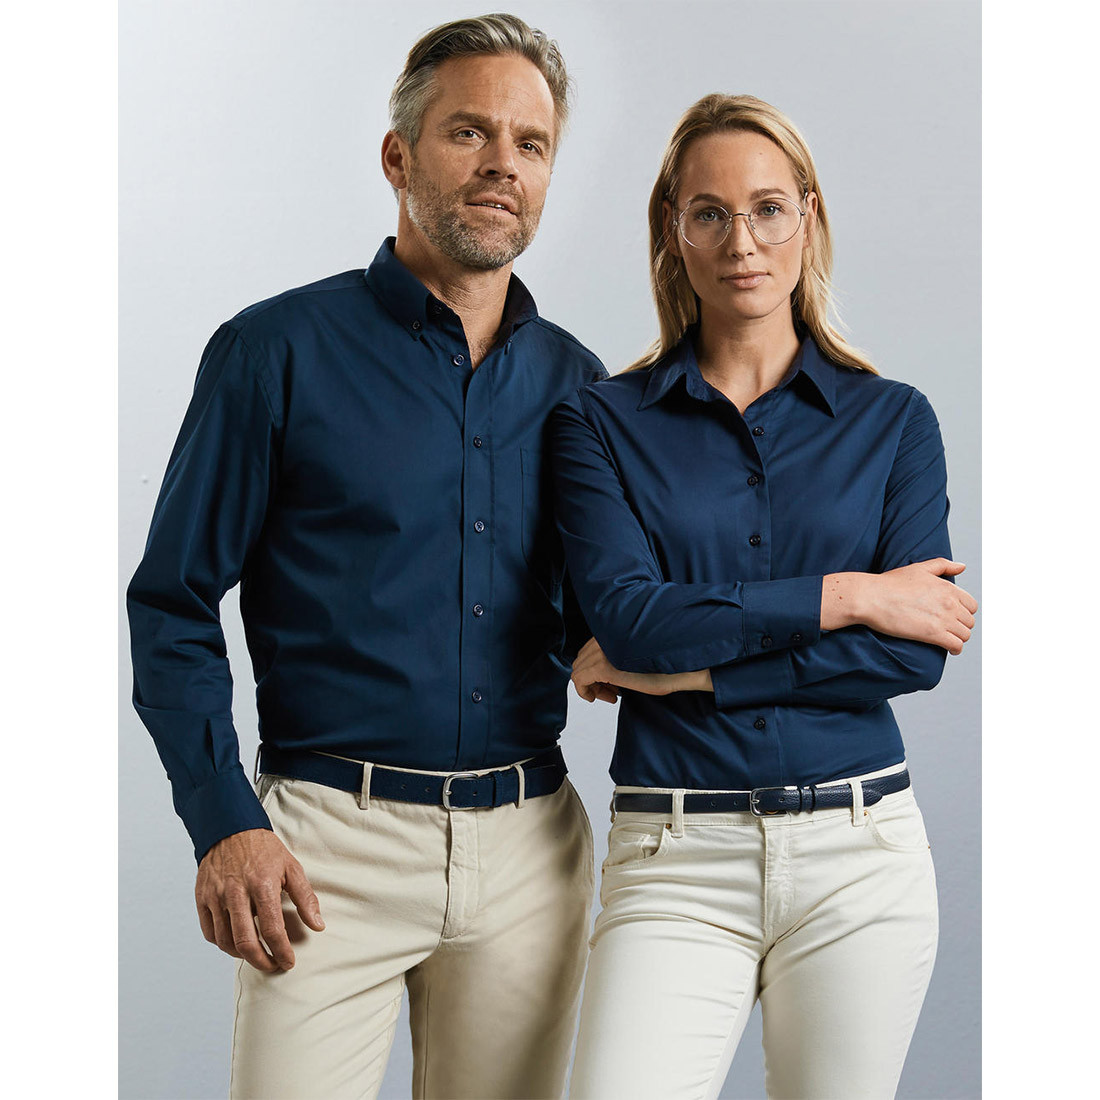 Ladies’ Long Sleeve Classic Twill Shirt - Les vêtements de protection